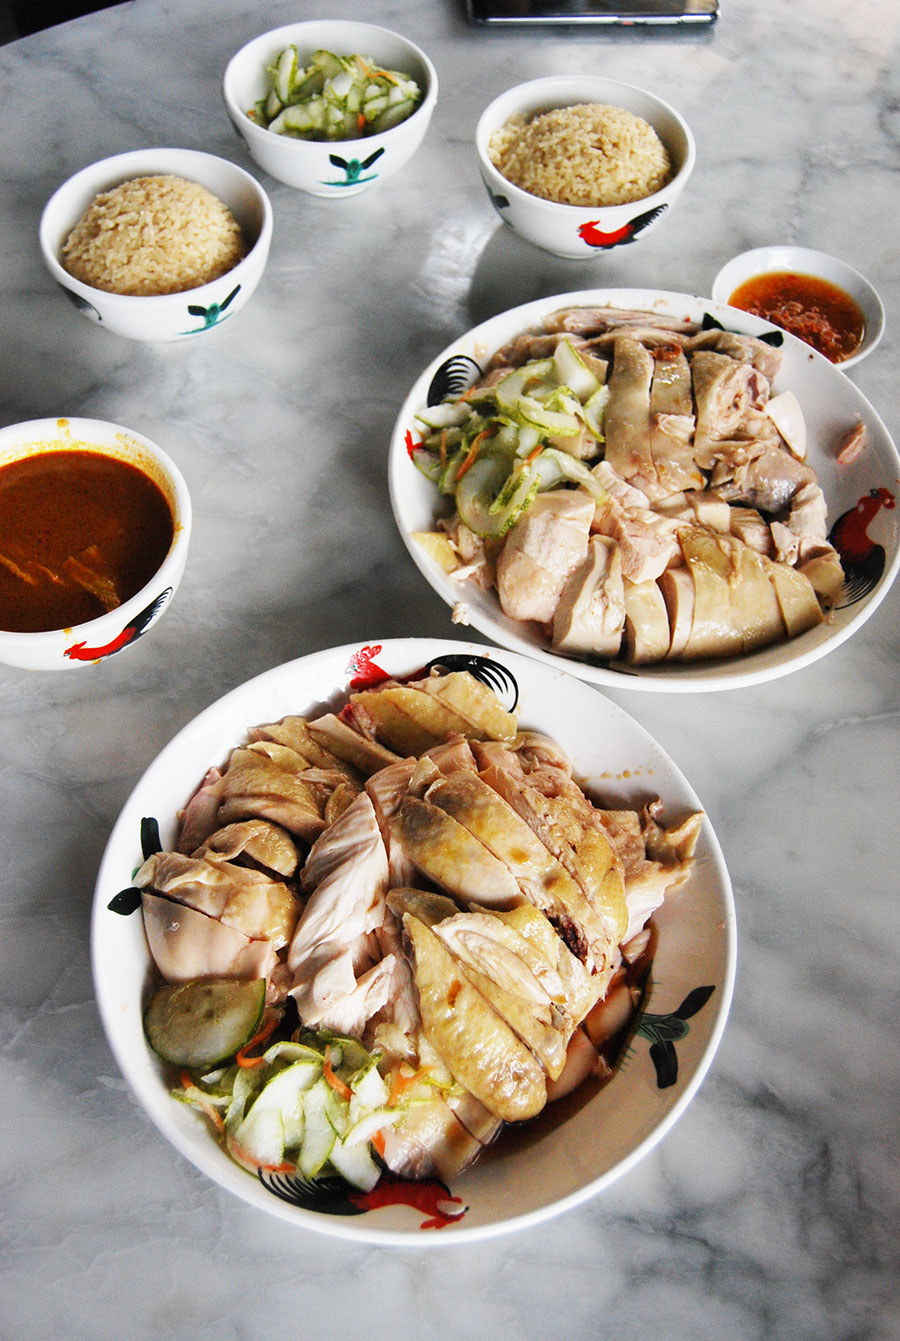 マレーシア・ボルネオ島の町で食べた「海南鶏飯」。しっとりやわらかな肉質で日本人好み。価格は1人前で約250円。